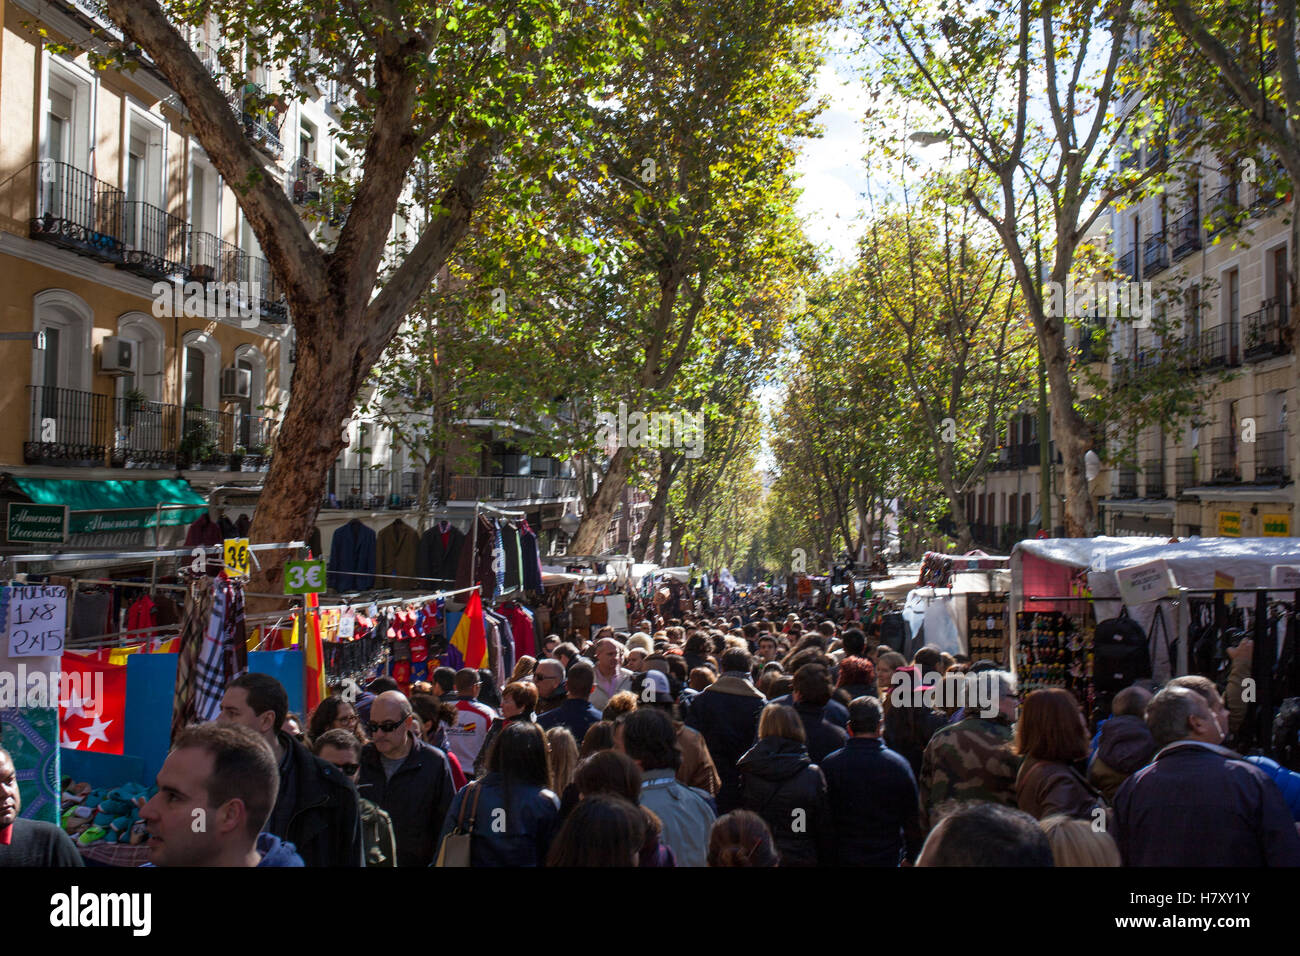 Madrid, Espagne - 6 novembre 2016 : des personnes visitant Rastro street market. Marché aux puces en plein air populaires Banque D'Images